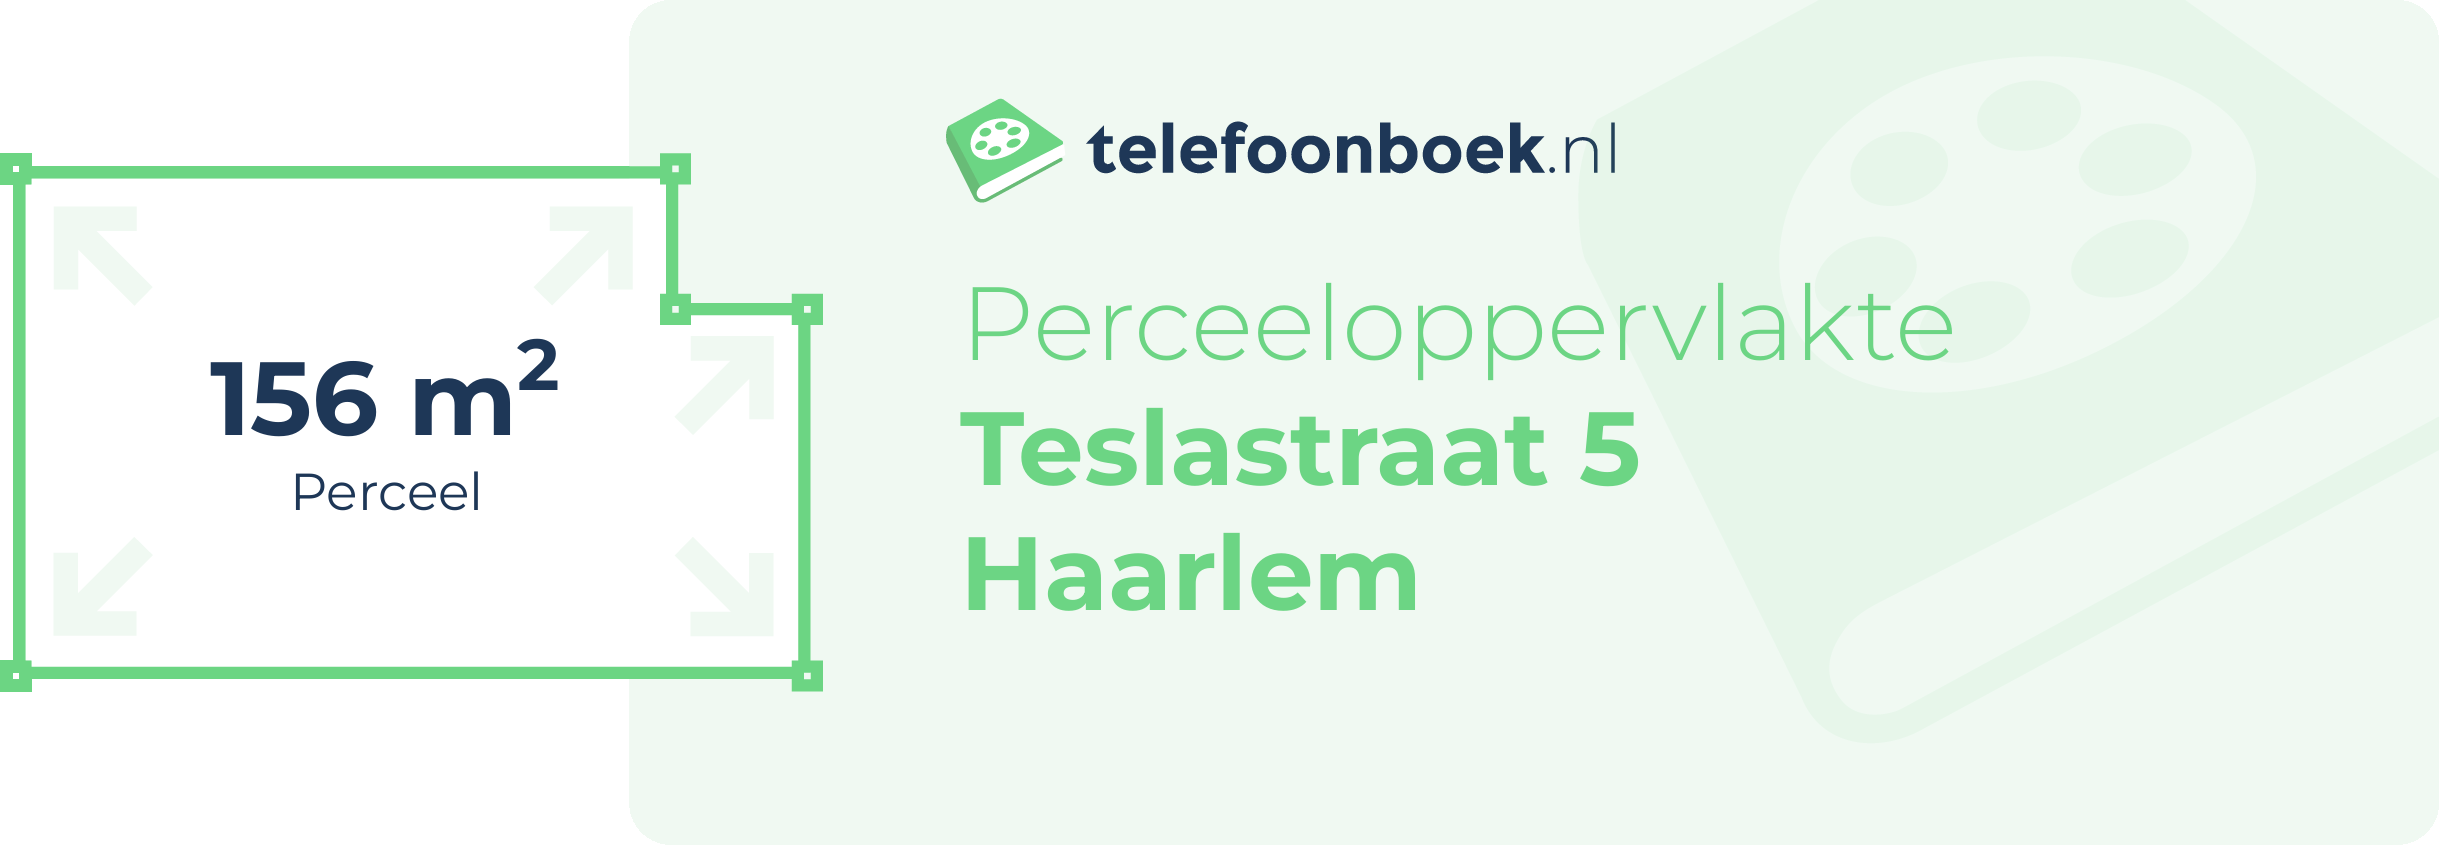 Perceeloppervlakte Teslastraat 5 Haarlem